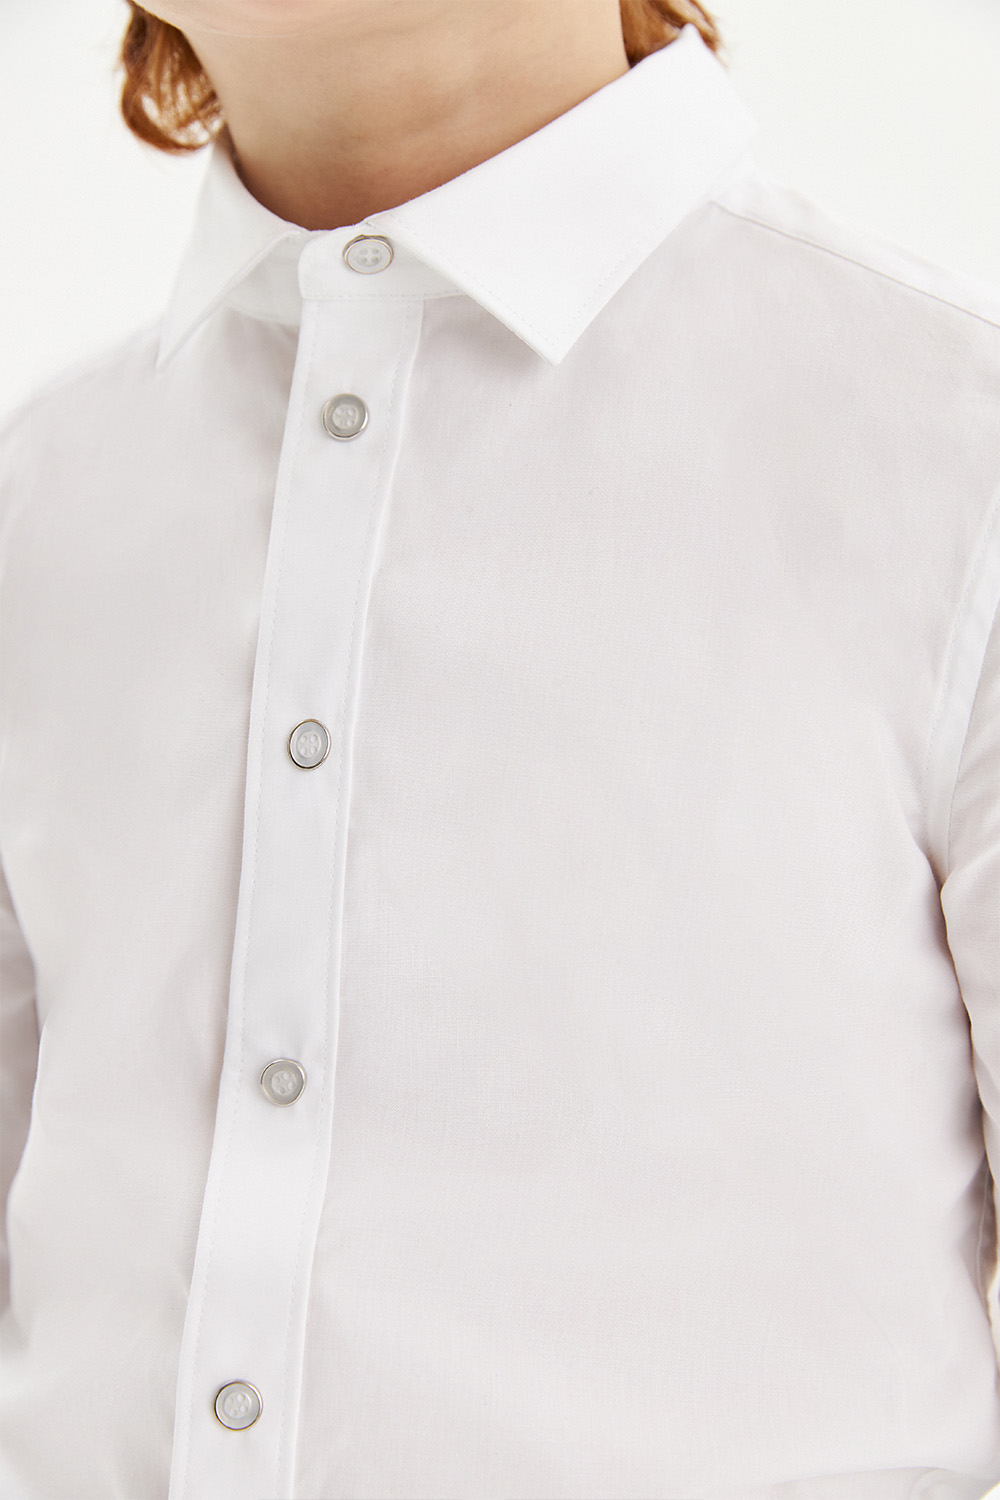 Хлопковая сорочка Slim на кнопках (SSFSB-229-18045-200) Silver Spoon